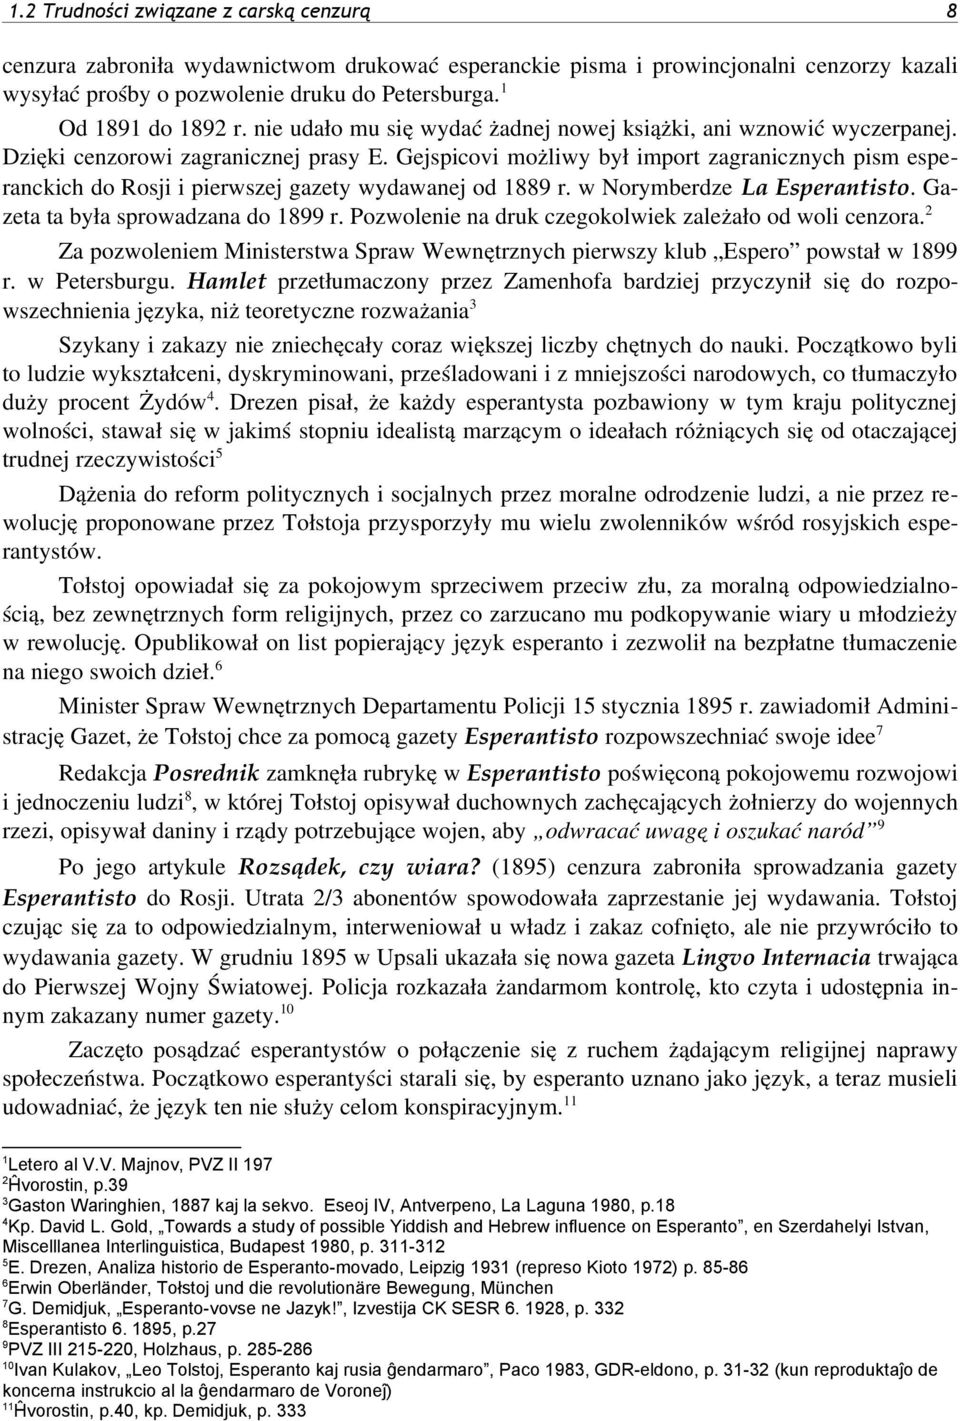 Gejspicovi możliwy był import zagranicznych pism esperanckich do Rosji i pierwszej gazety wydawanej od r. w Norymberdze La Esperantisto. Gazeta ta była sprowadzana do r.